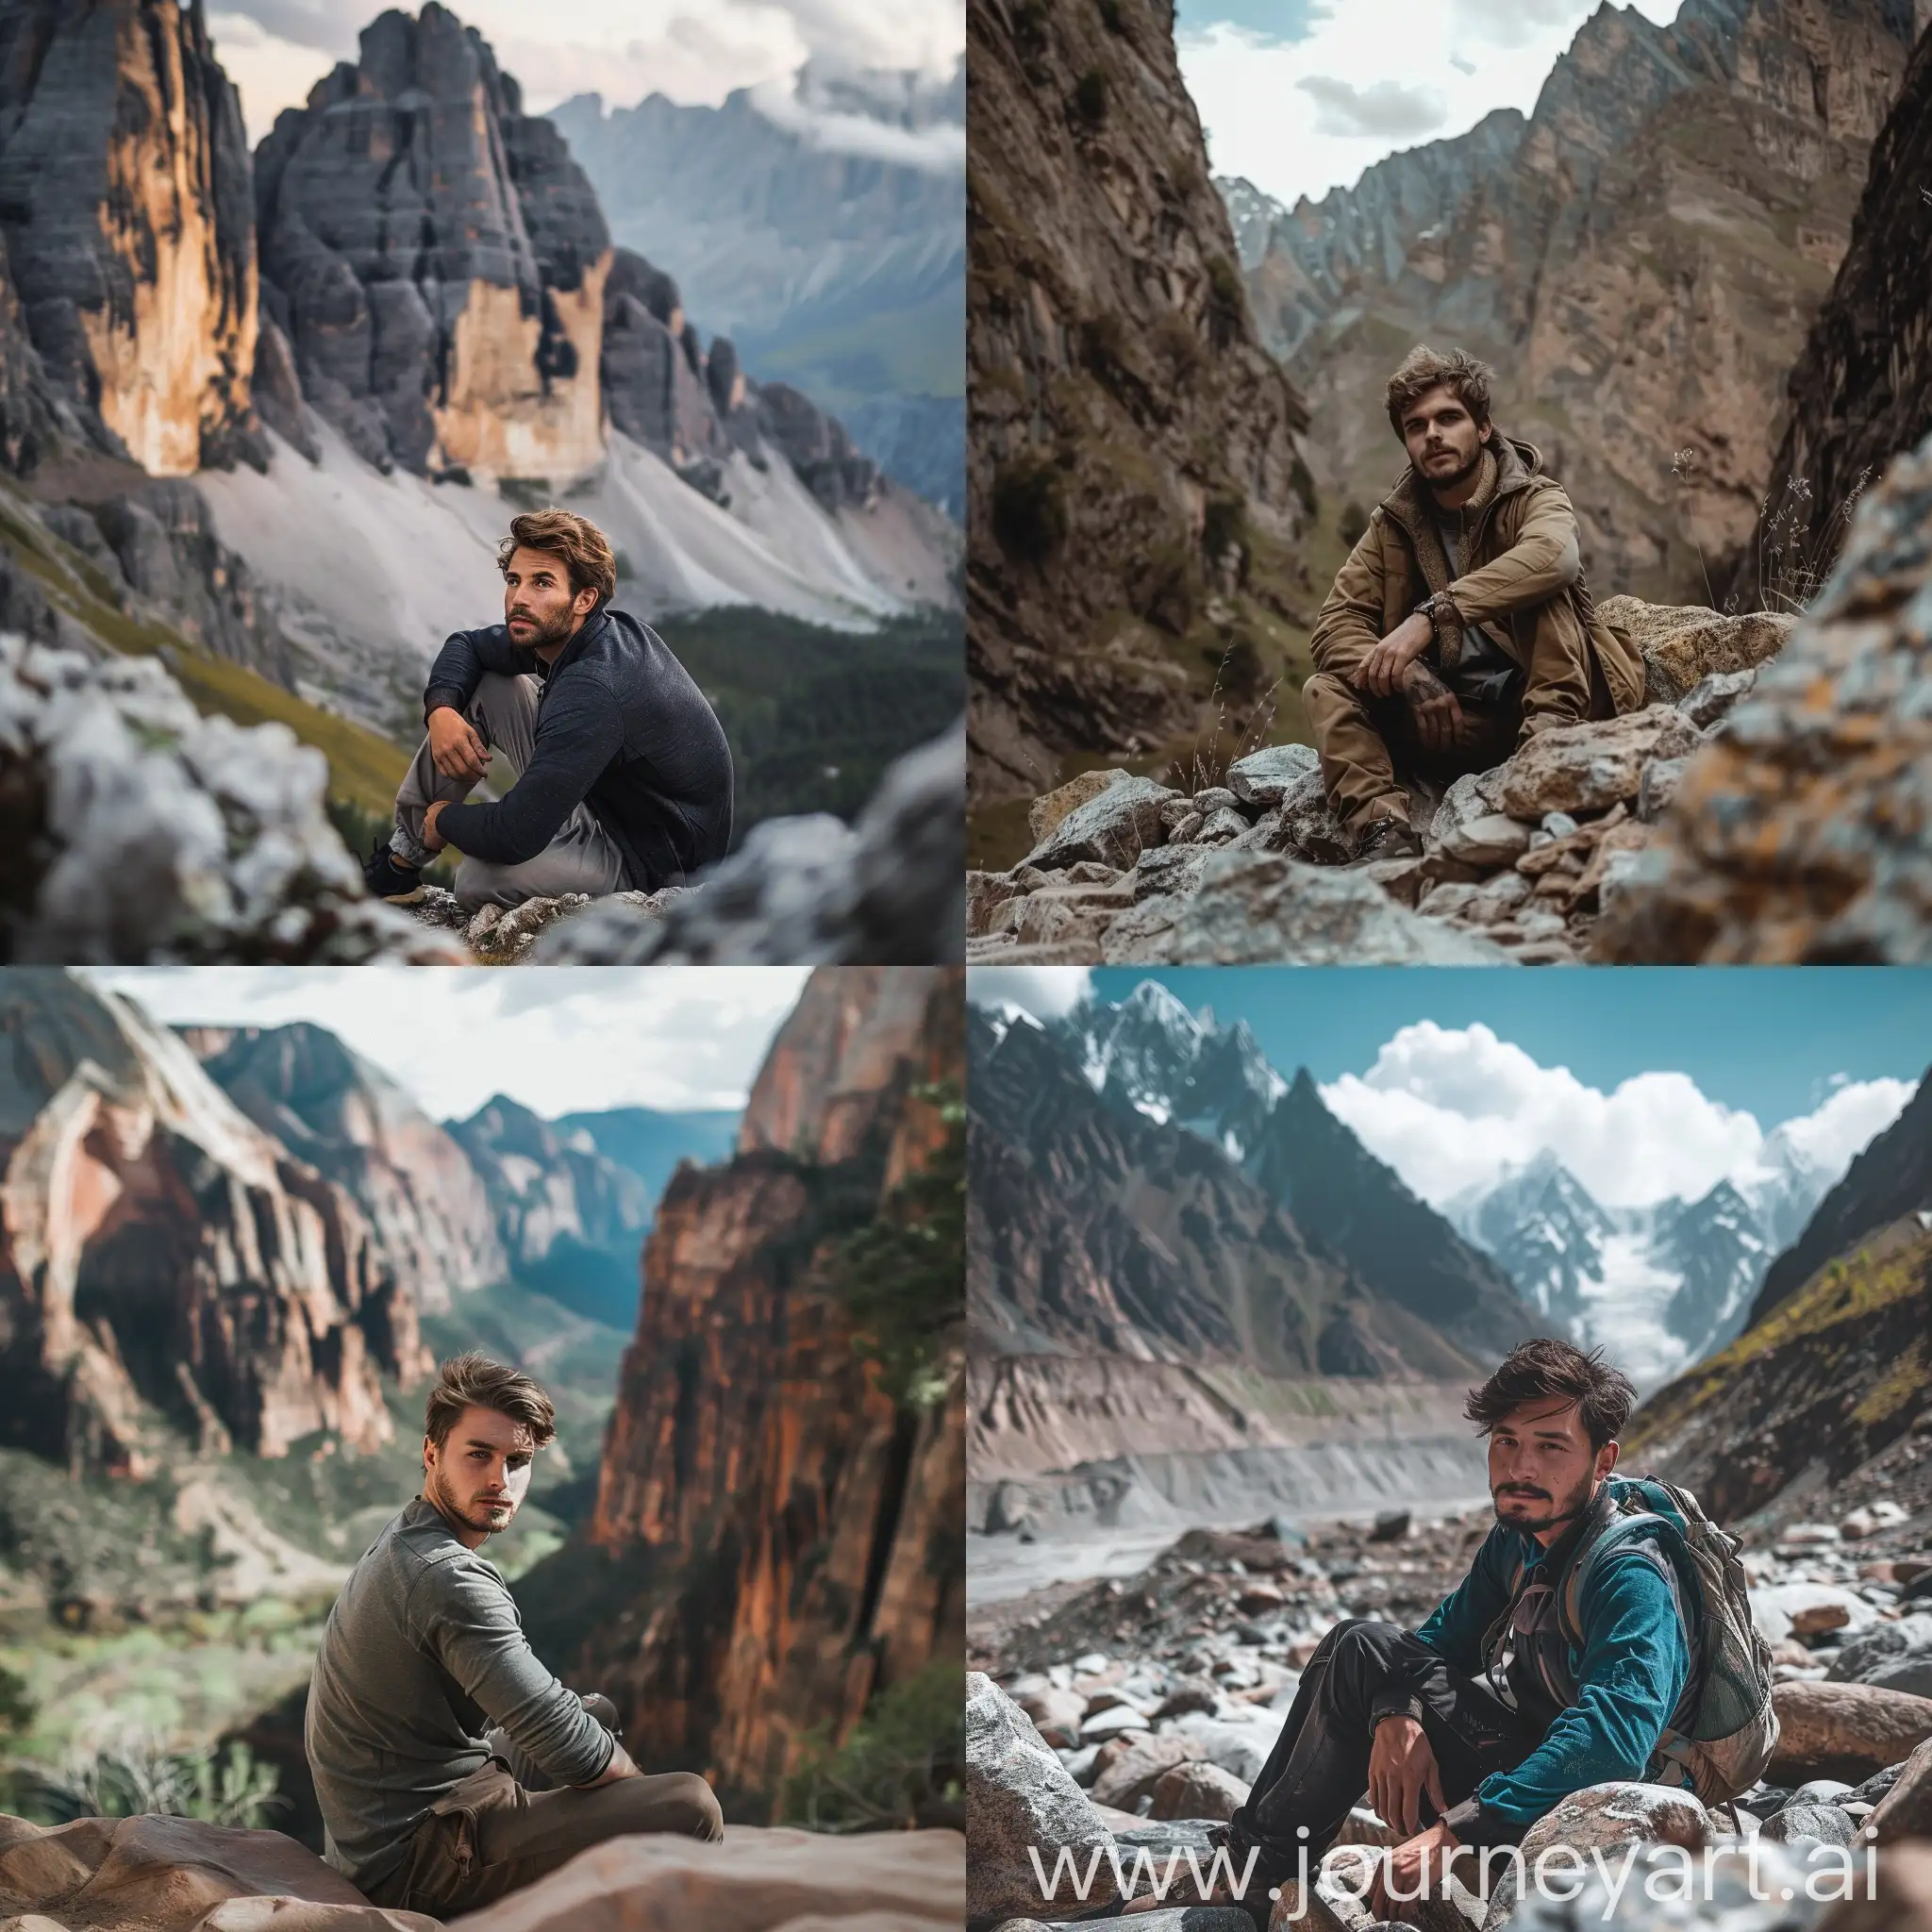  صورة فخمة لرجل ينظر بأتجاه الكاميرا في الجبال الطبيعة يجلس على الصخور 